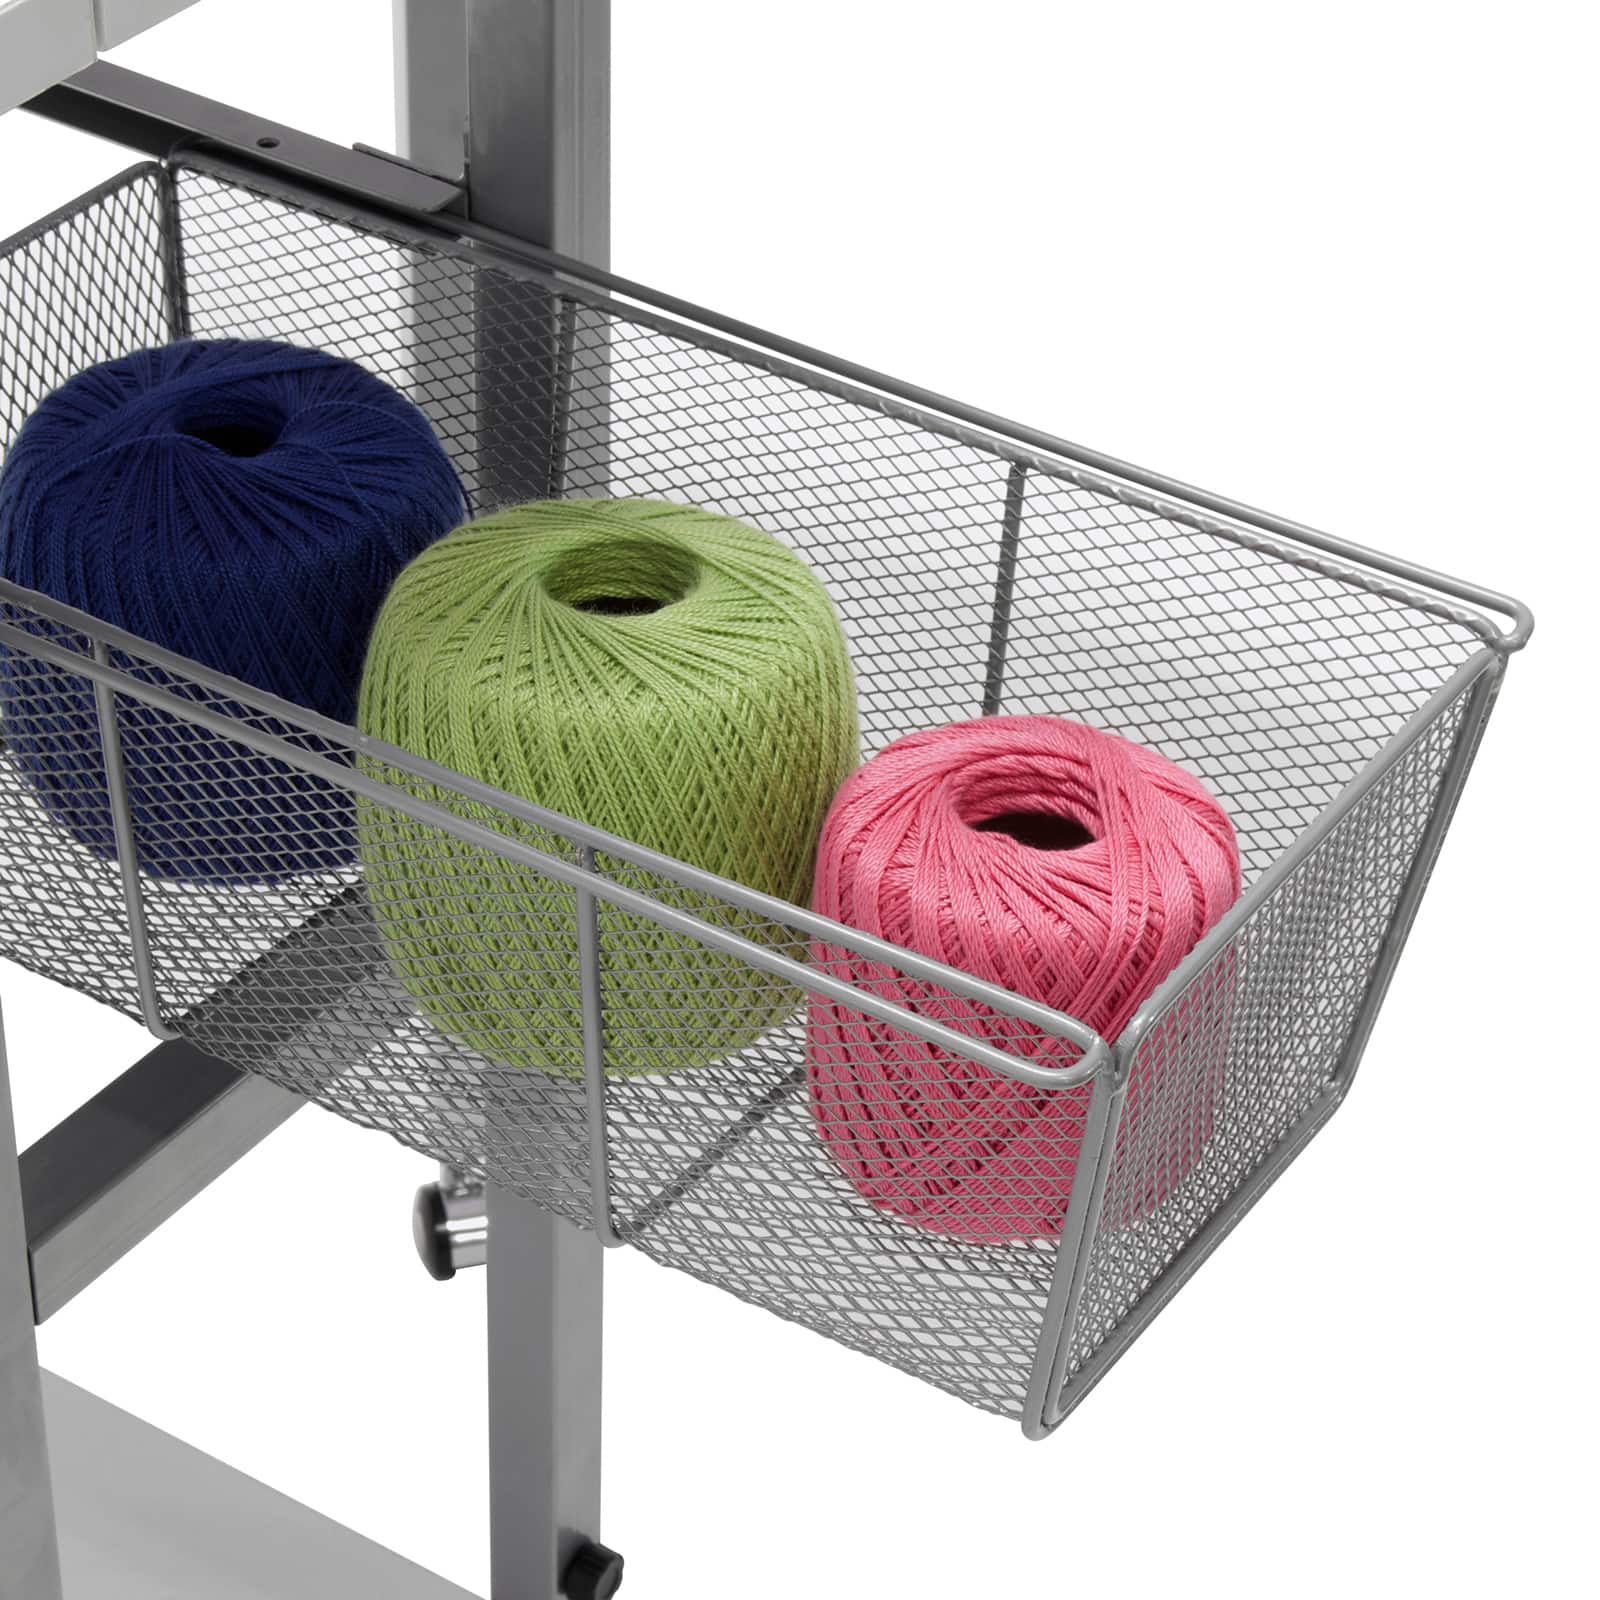 Sew Ready Craft Table with Storage Basket &#x26; Shelf